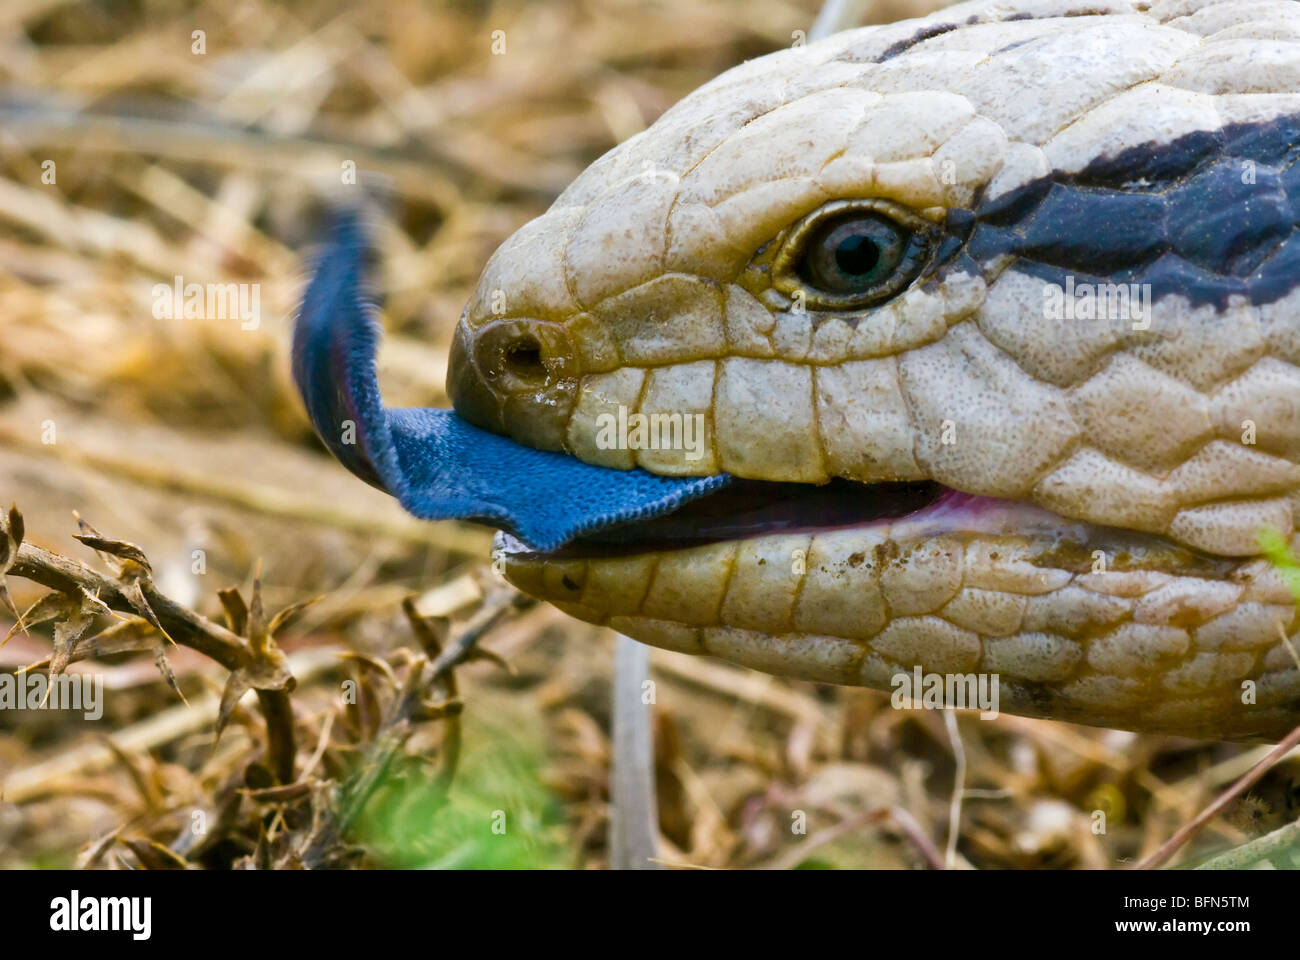 Un Centralian la febbre catarrale degli ovini Lizard affiora fuori il suo enorme blue tongue. Foto Stock